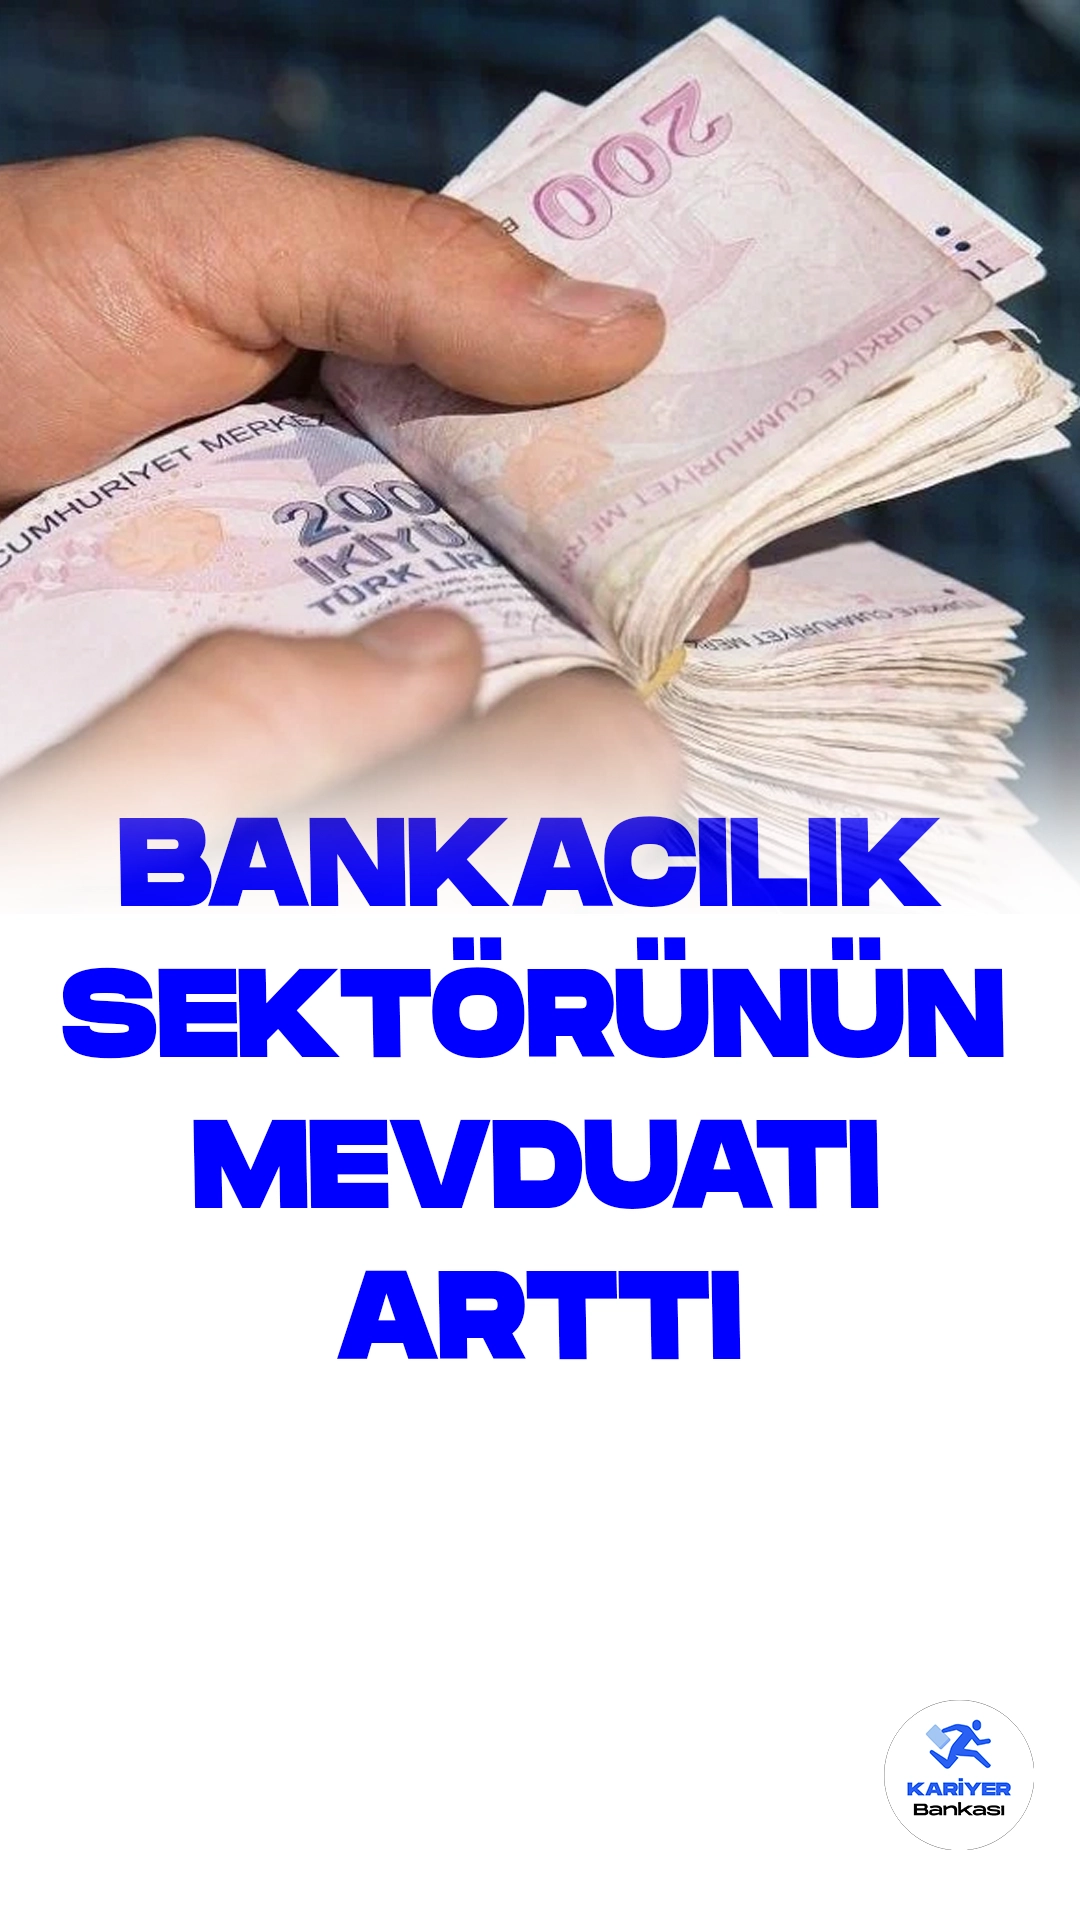 Bankacılık Sektörünün Toplam Mevduatı 13 Trilyon 394 Milyar Liraya Ulaştı.Türkiye Cumhuriyet Merkez Bankası (TCMB) tarafından yayımlanan haftalık para ve banka istatistikleri verilerine göre, bankacılık sektörünün toplam mevduatı 18 Ağustos itibarıyla 127,1 milyar lira artış göstererek 13 trilyon 394 milyar lira seviyesine yükseldi.